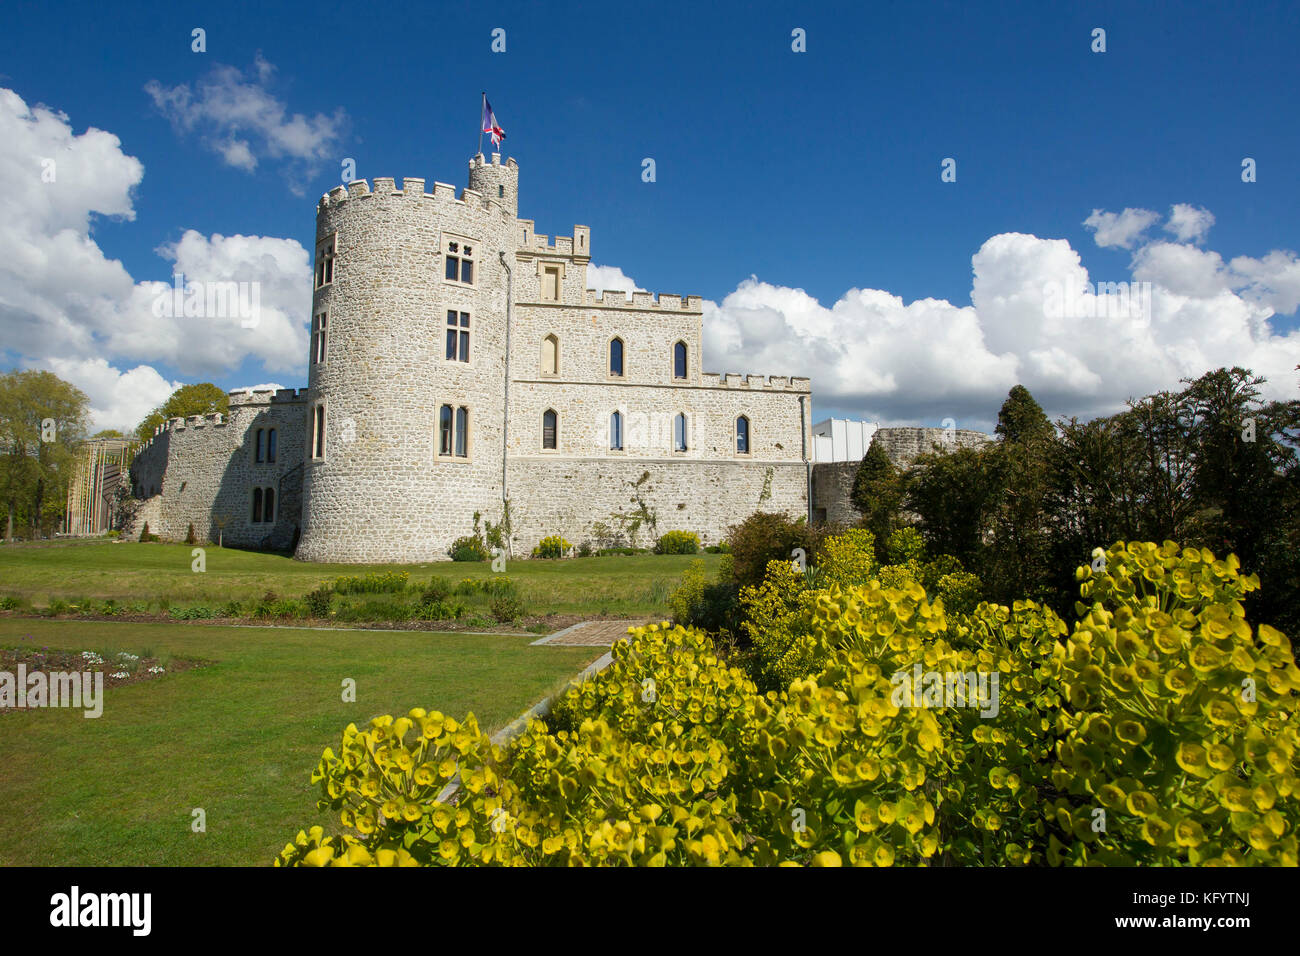 Château d'Hardelot à Condette, château construit dans le style architectural Tudor sur les ruines de l'ancien château médiéval. Le château abrite l'Ent Banque D'Images